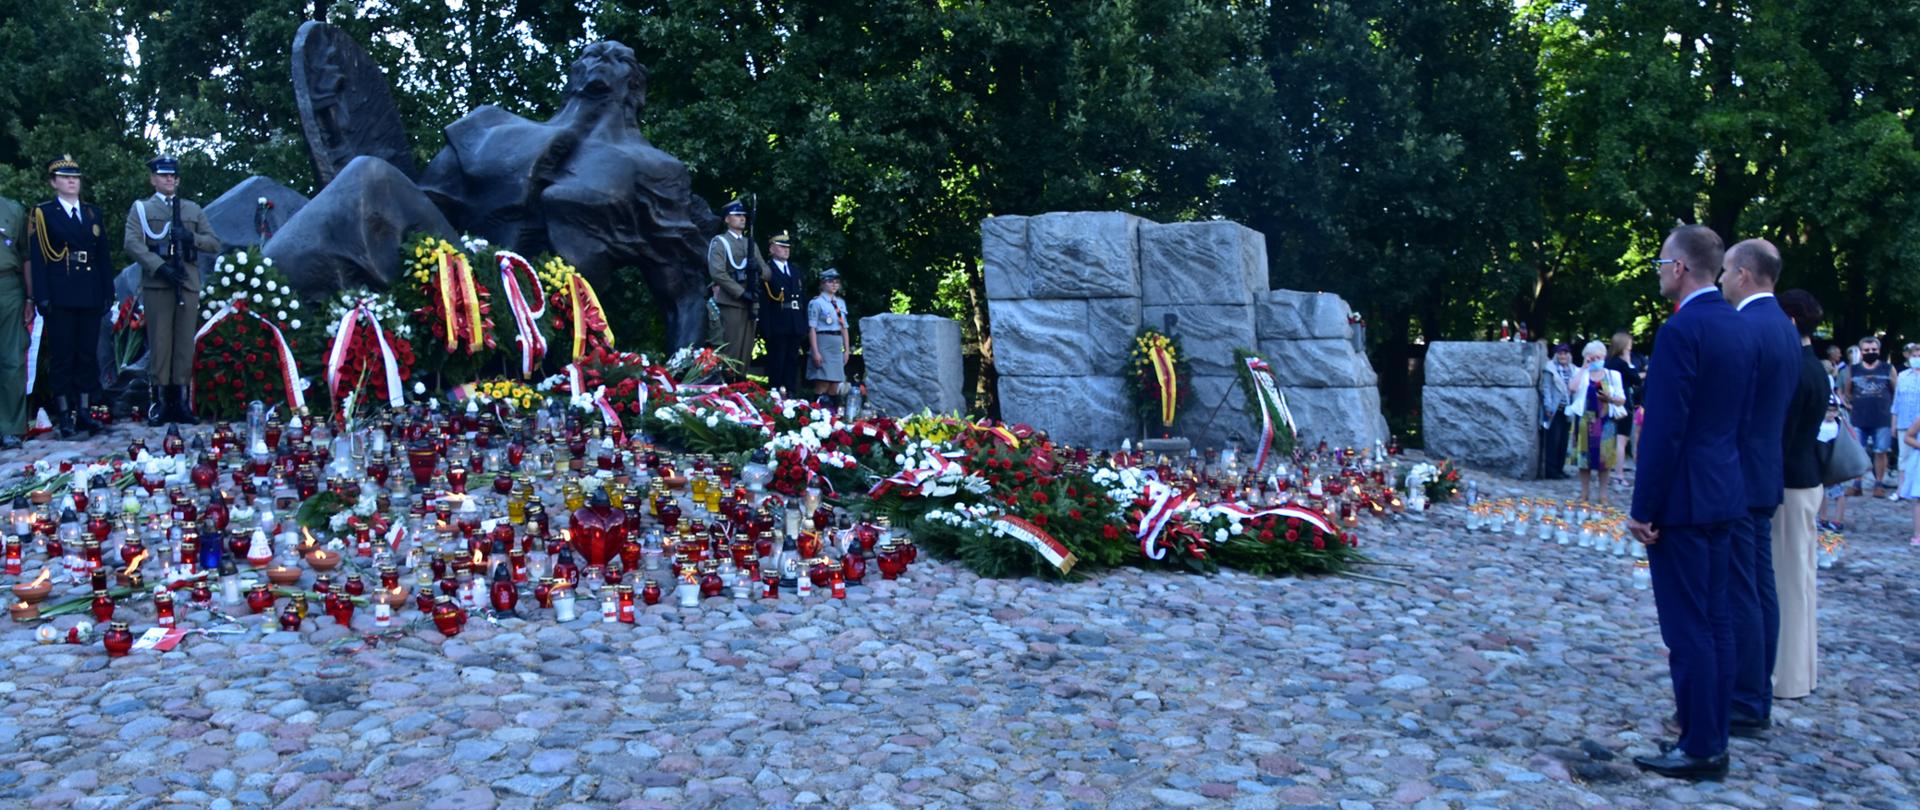 Wojewoda złożył kwiaty na kurhanie przed Pomnikiem „Polegli-Niepokonani” na Cmentarzu Powstańców Warszawy na Woli, w którym znajdują się prochy ponad 50 tys. mieszkańców stolicy poległych w Powstaniu Warszawskim